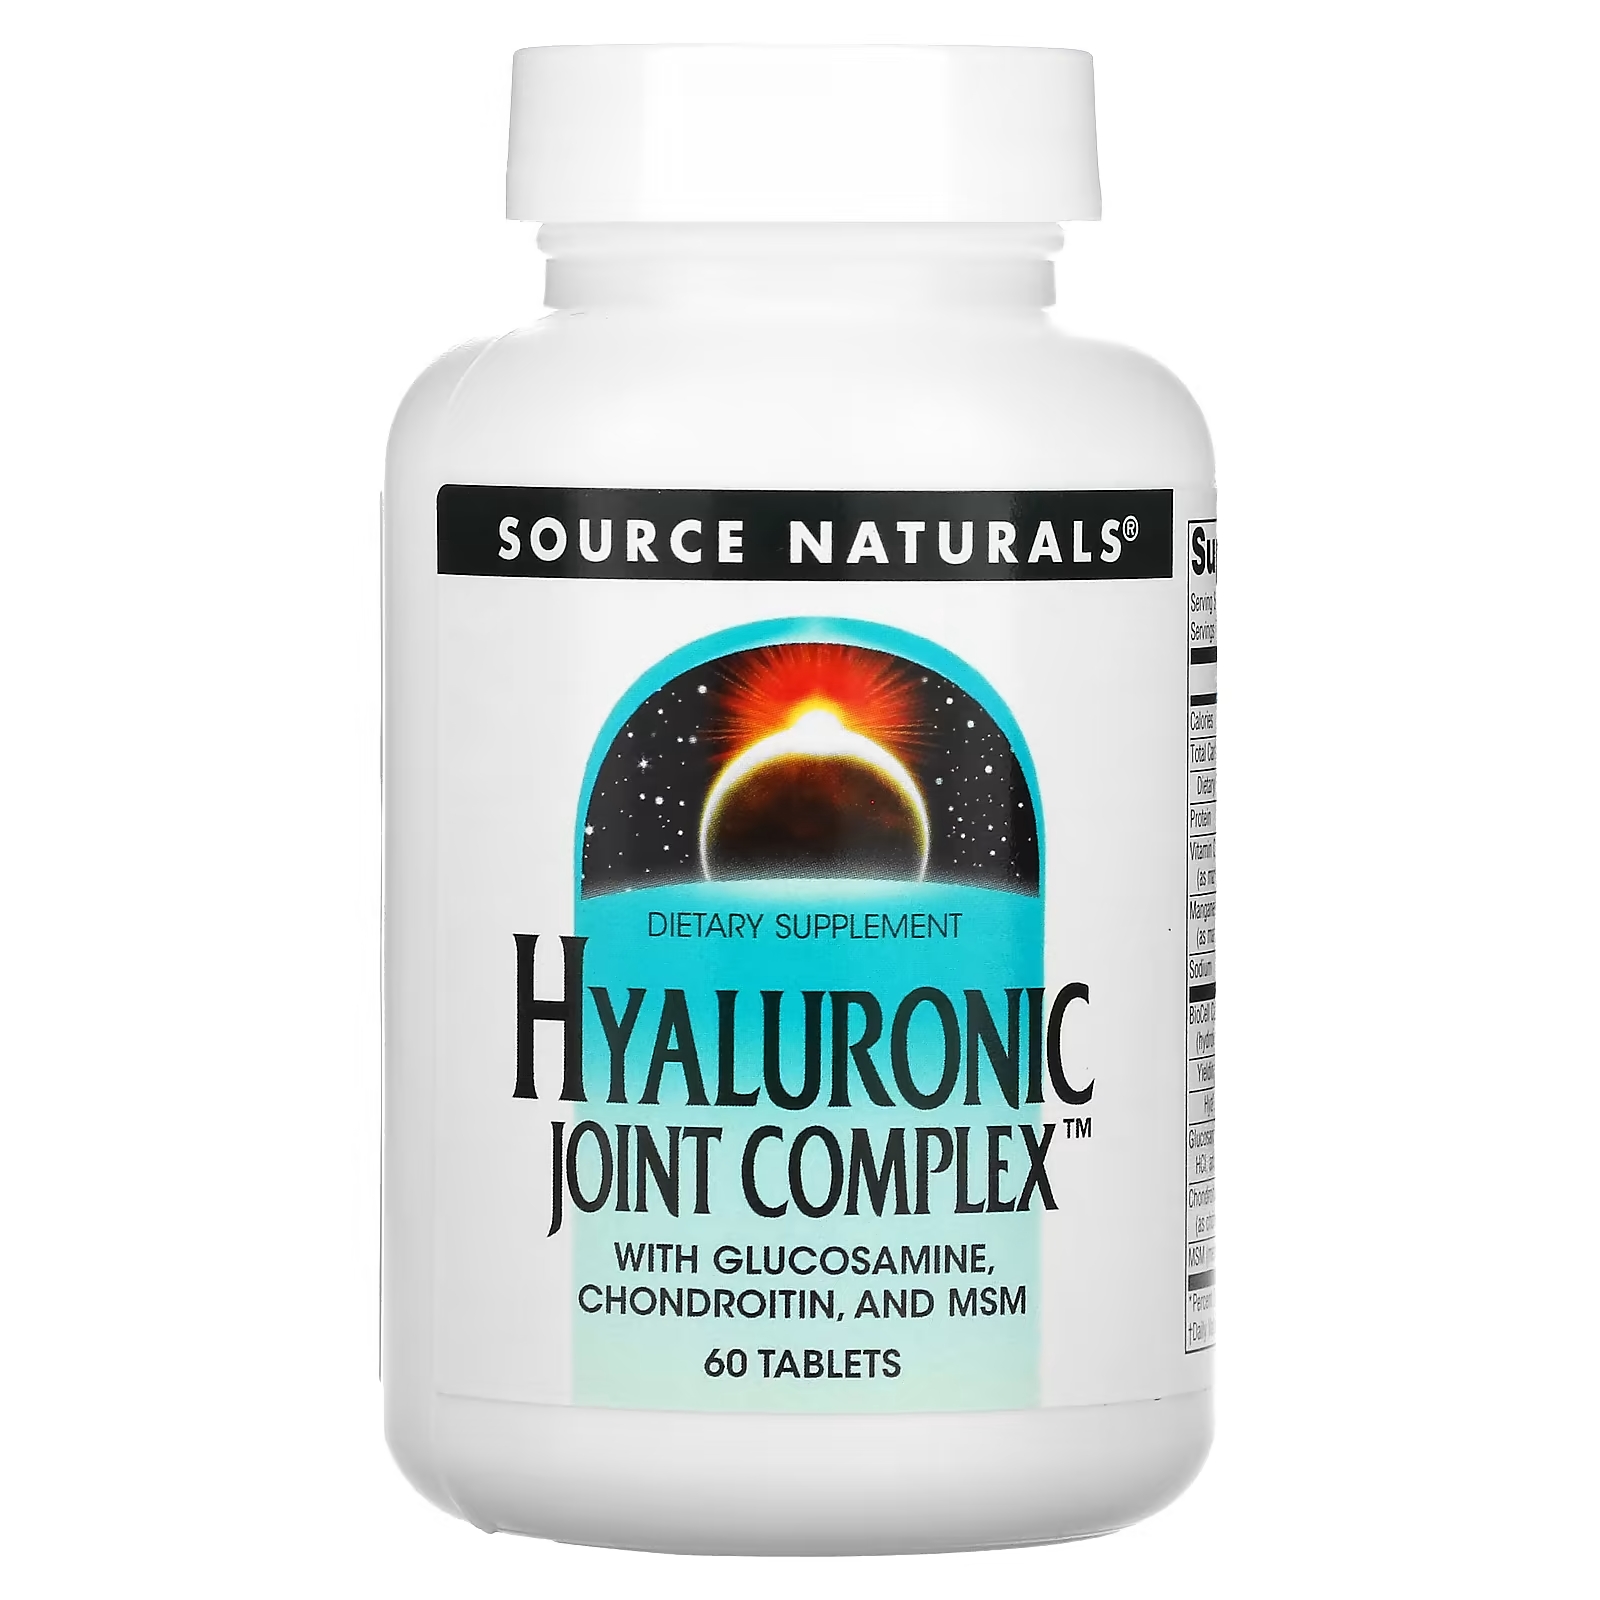 Source Naturals гиалуроновый комплекс для суставов, 60 таблеток source naturals гиалуроновый комплекс для суставов 60 таблеток